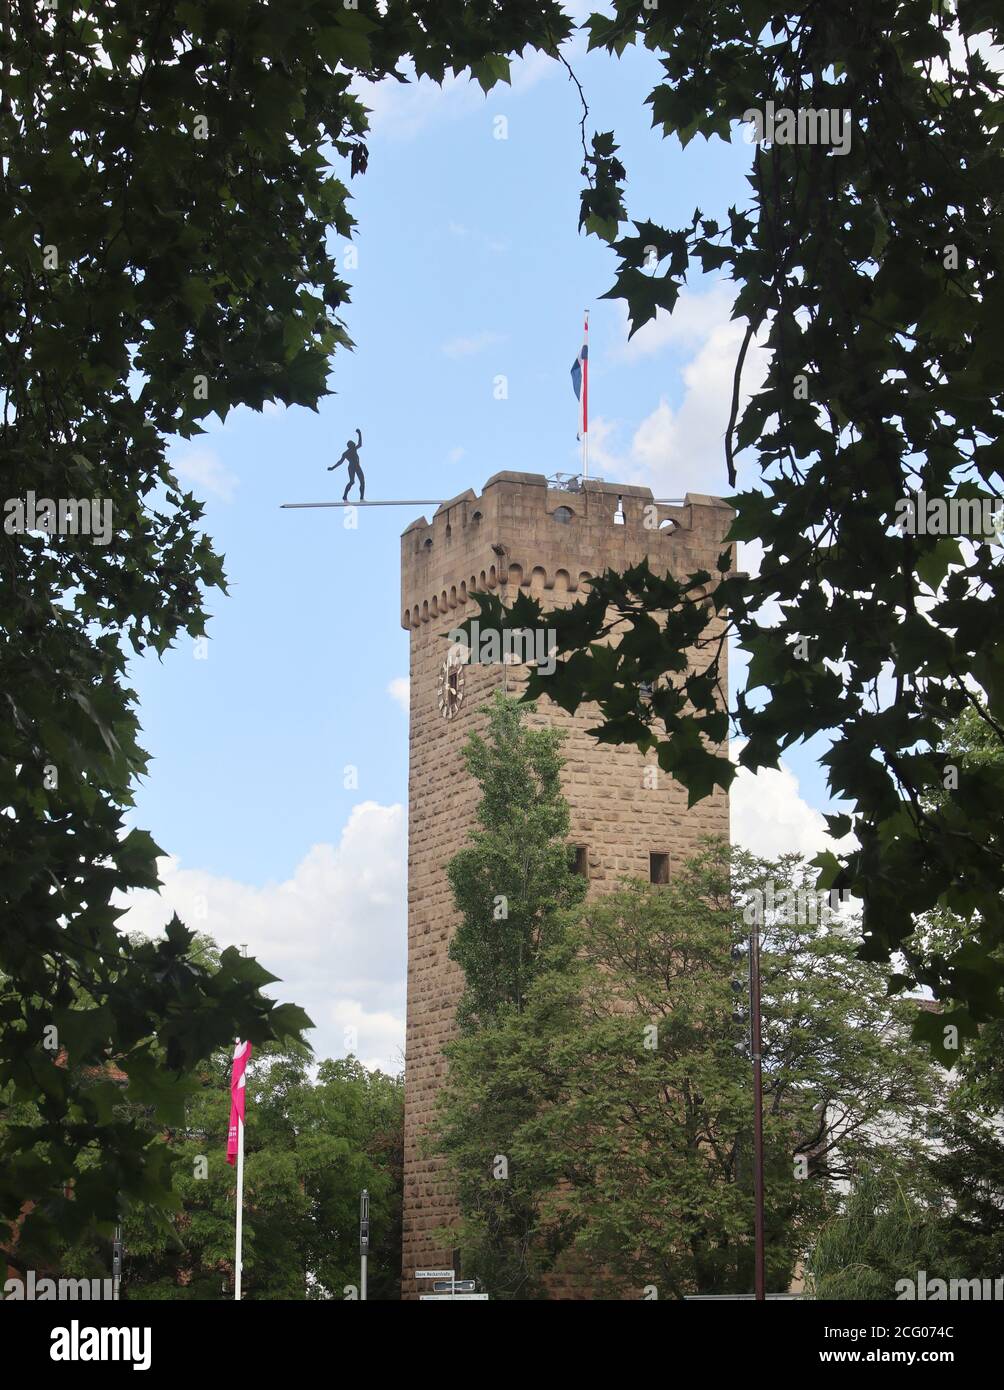 The historical God Tower, Götzenturm, in Heilbronn, Baden-Württemberg, Germany, Europe Stock Photo